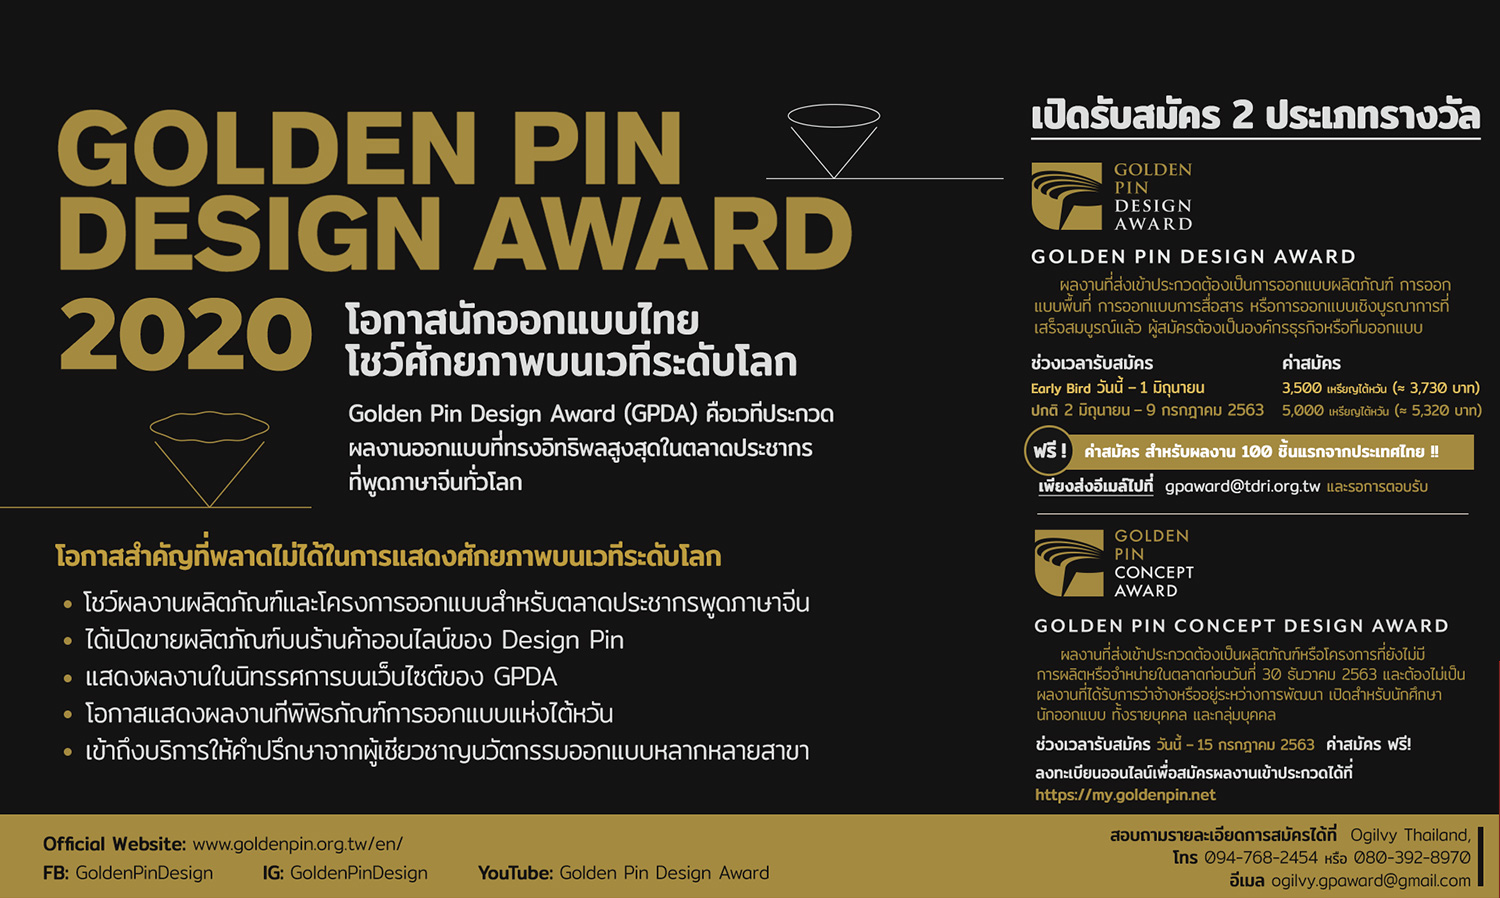 Golden Pin Design Award 2020 เปิดรับสมัครผลงาน โอกาสที่พลาดไม่ได้เพื่อแสดงศักยภาพของคนไทยบนเวทีออกแบบระดับโลก สมัครฟรีสำหรับ 100 ผลงานแรกที่ส่งเข้าประกวด